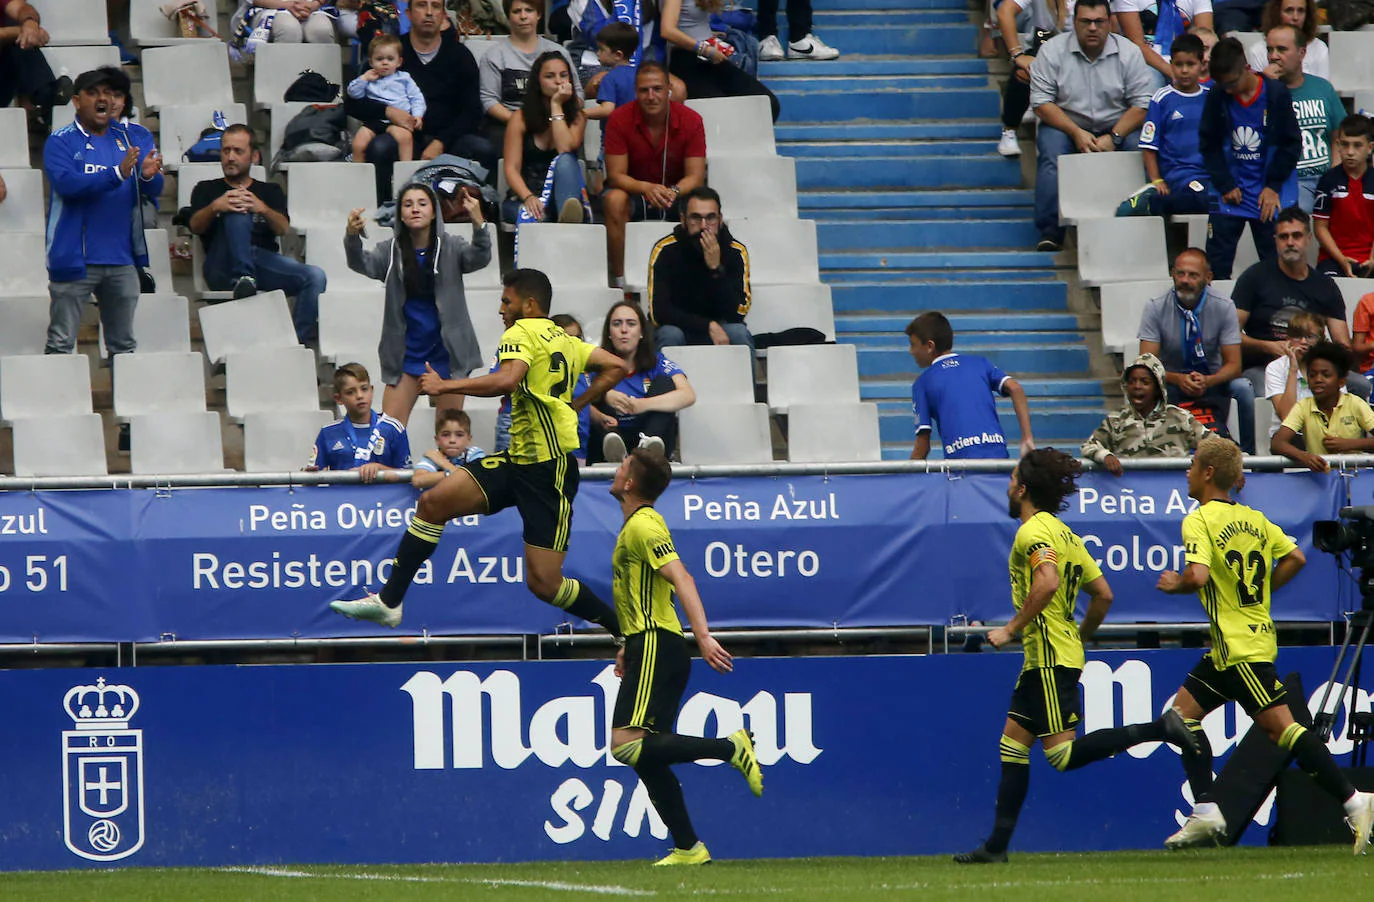 Fotos: Real Oviedo - Zaragoza, en imágenes